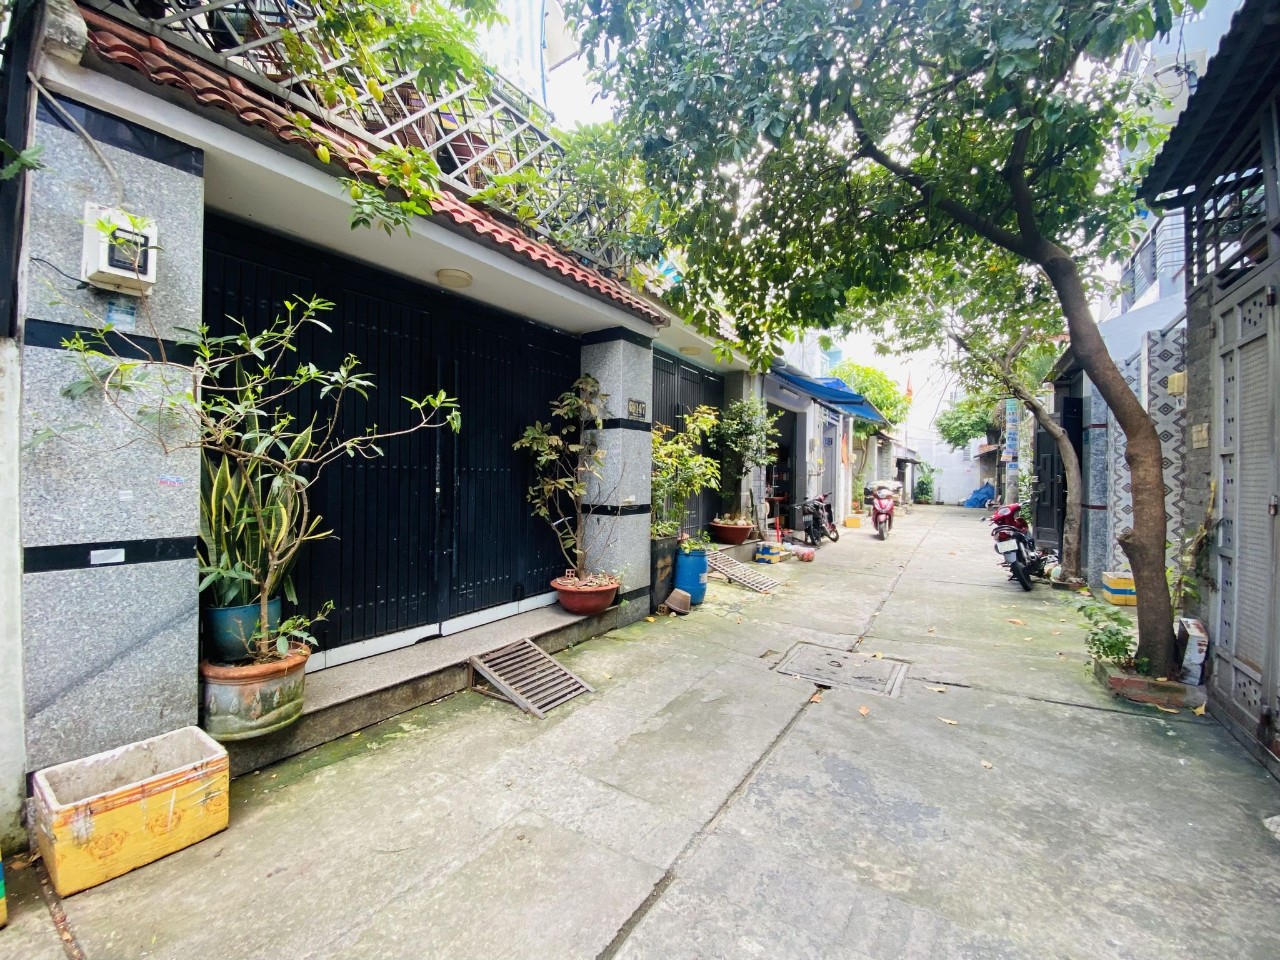 Bán nhà lớn, 2 tầng, gần 100m2 phường đắt giá nhất Tân Phú, giá cực rẻ.